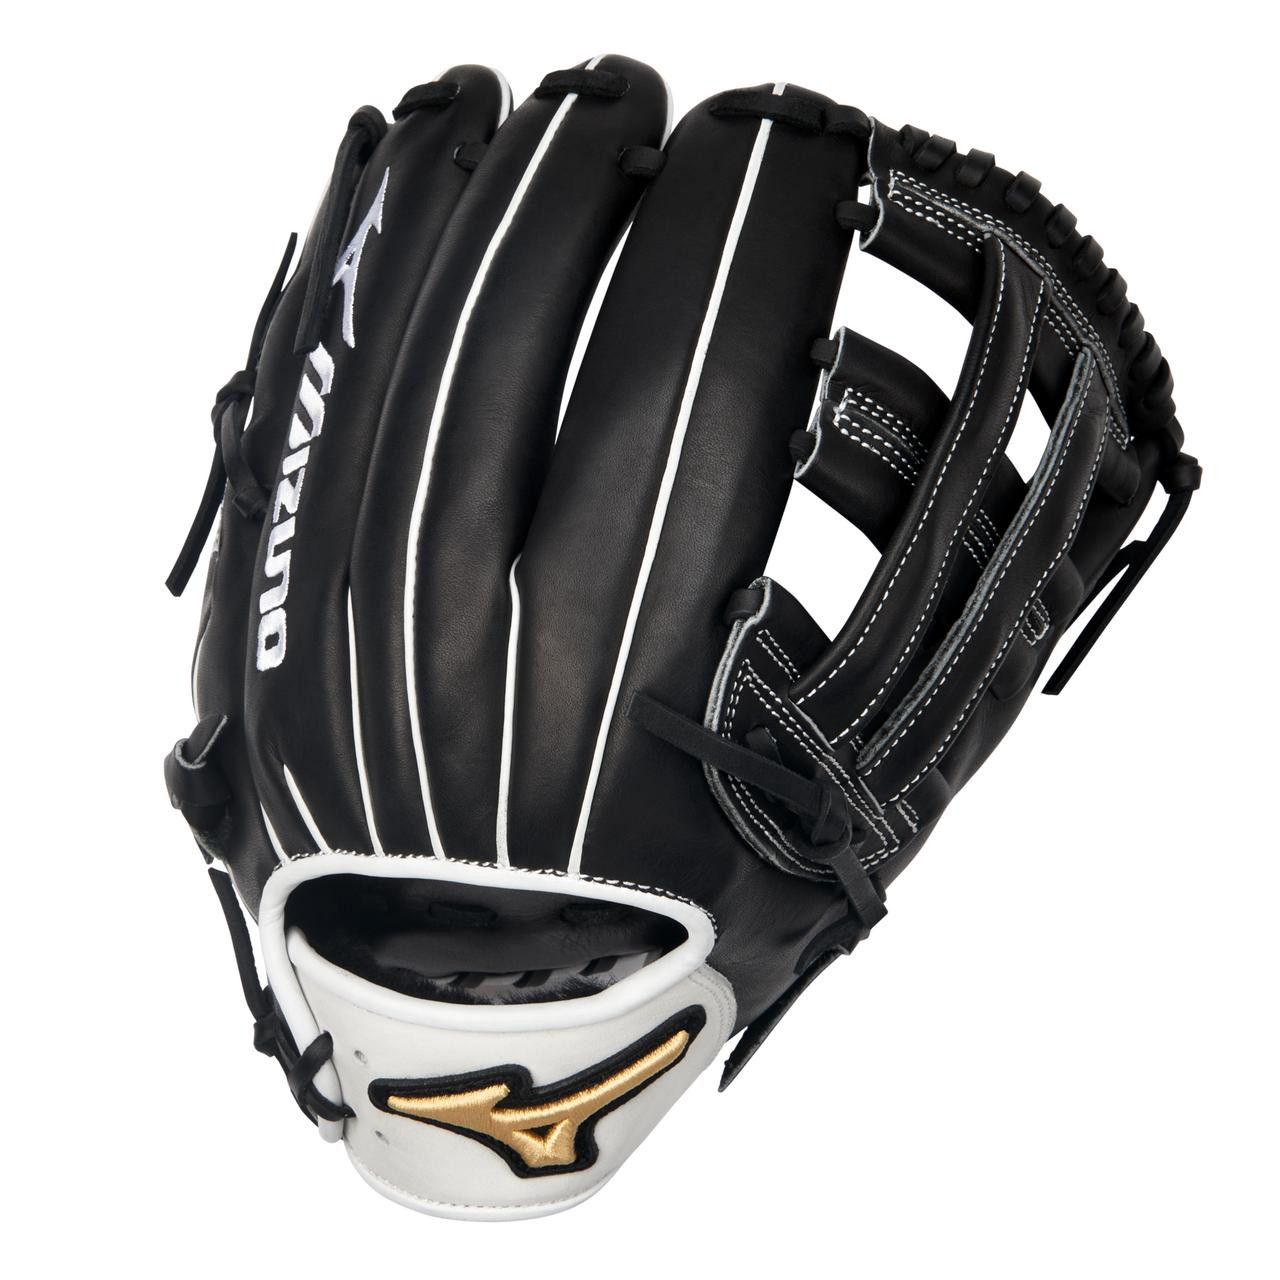 Pro Select Fastpitch Softball Glove 12